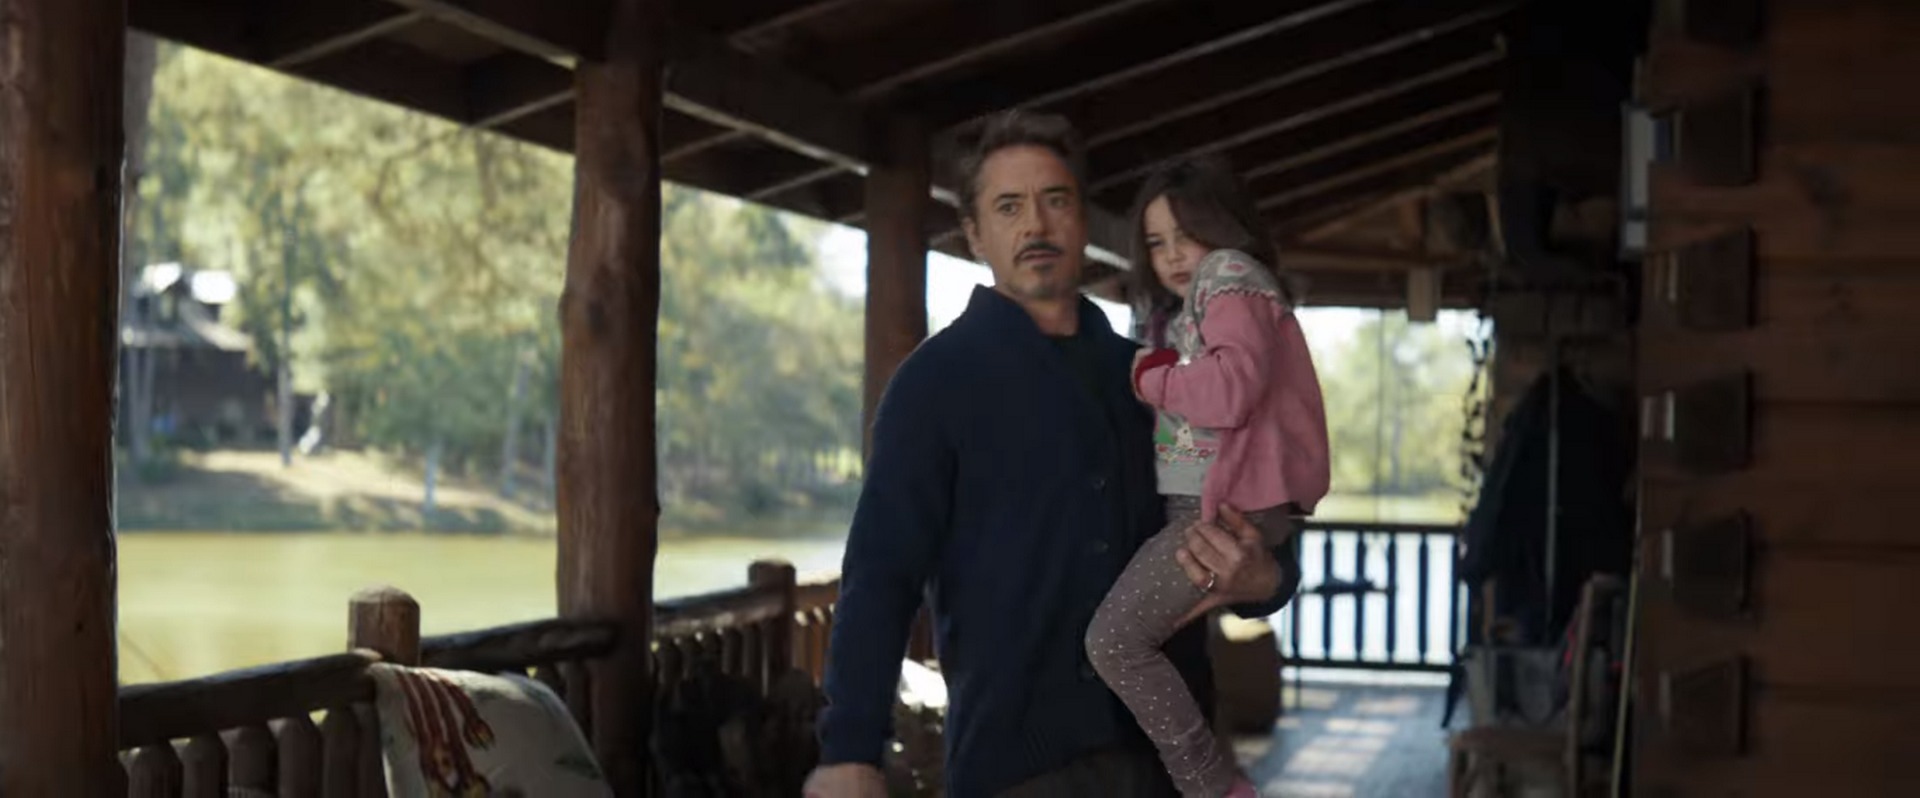 Teoria chocante revela verdade sobre filha de Tony Stark em Vingadores Ultimato